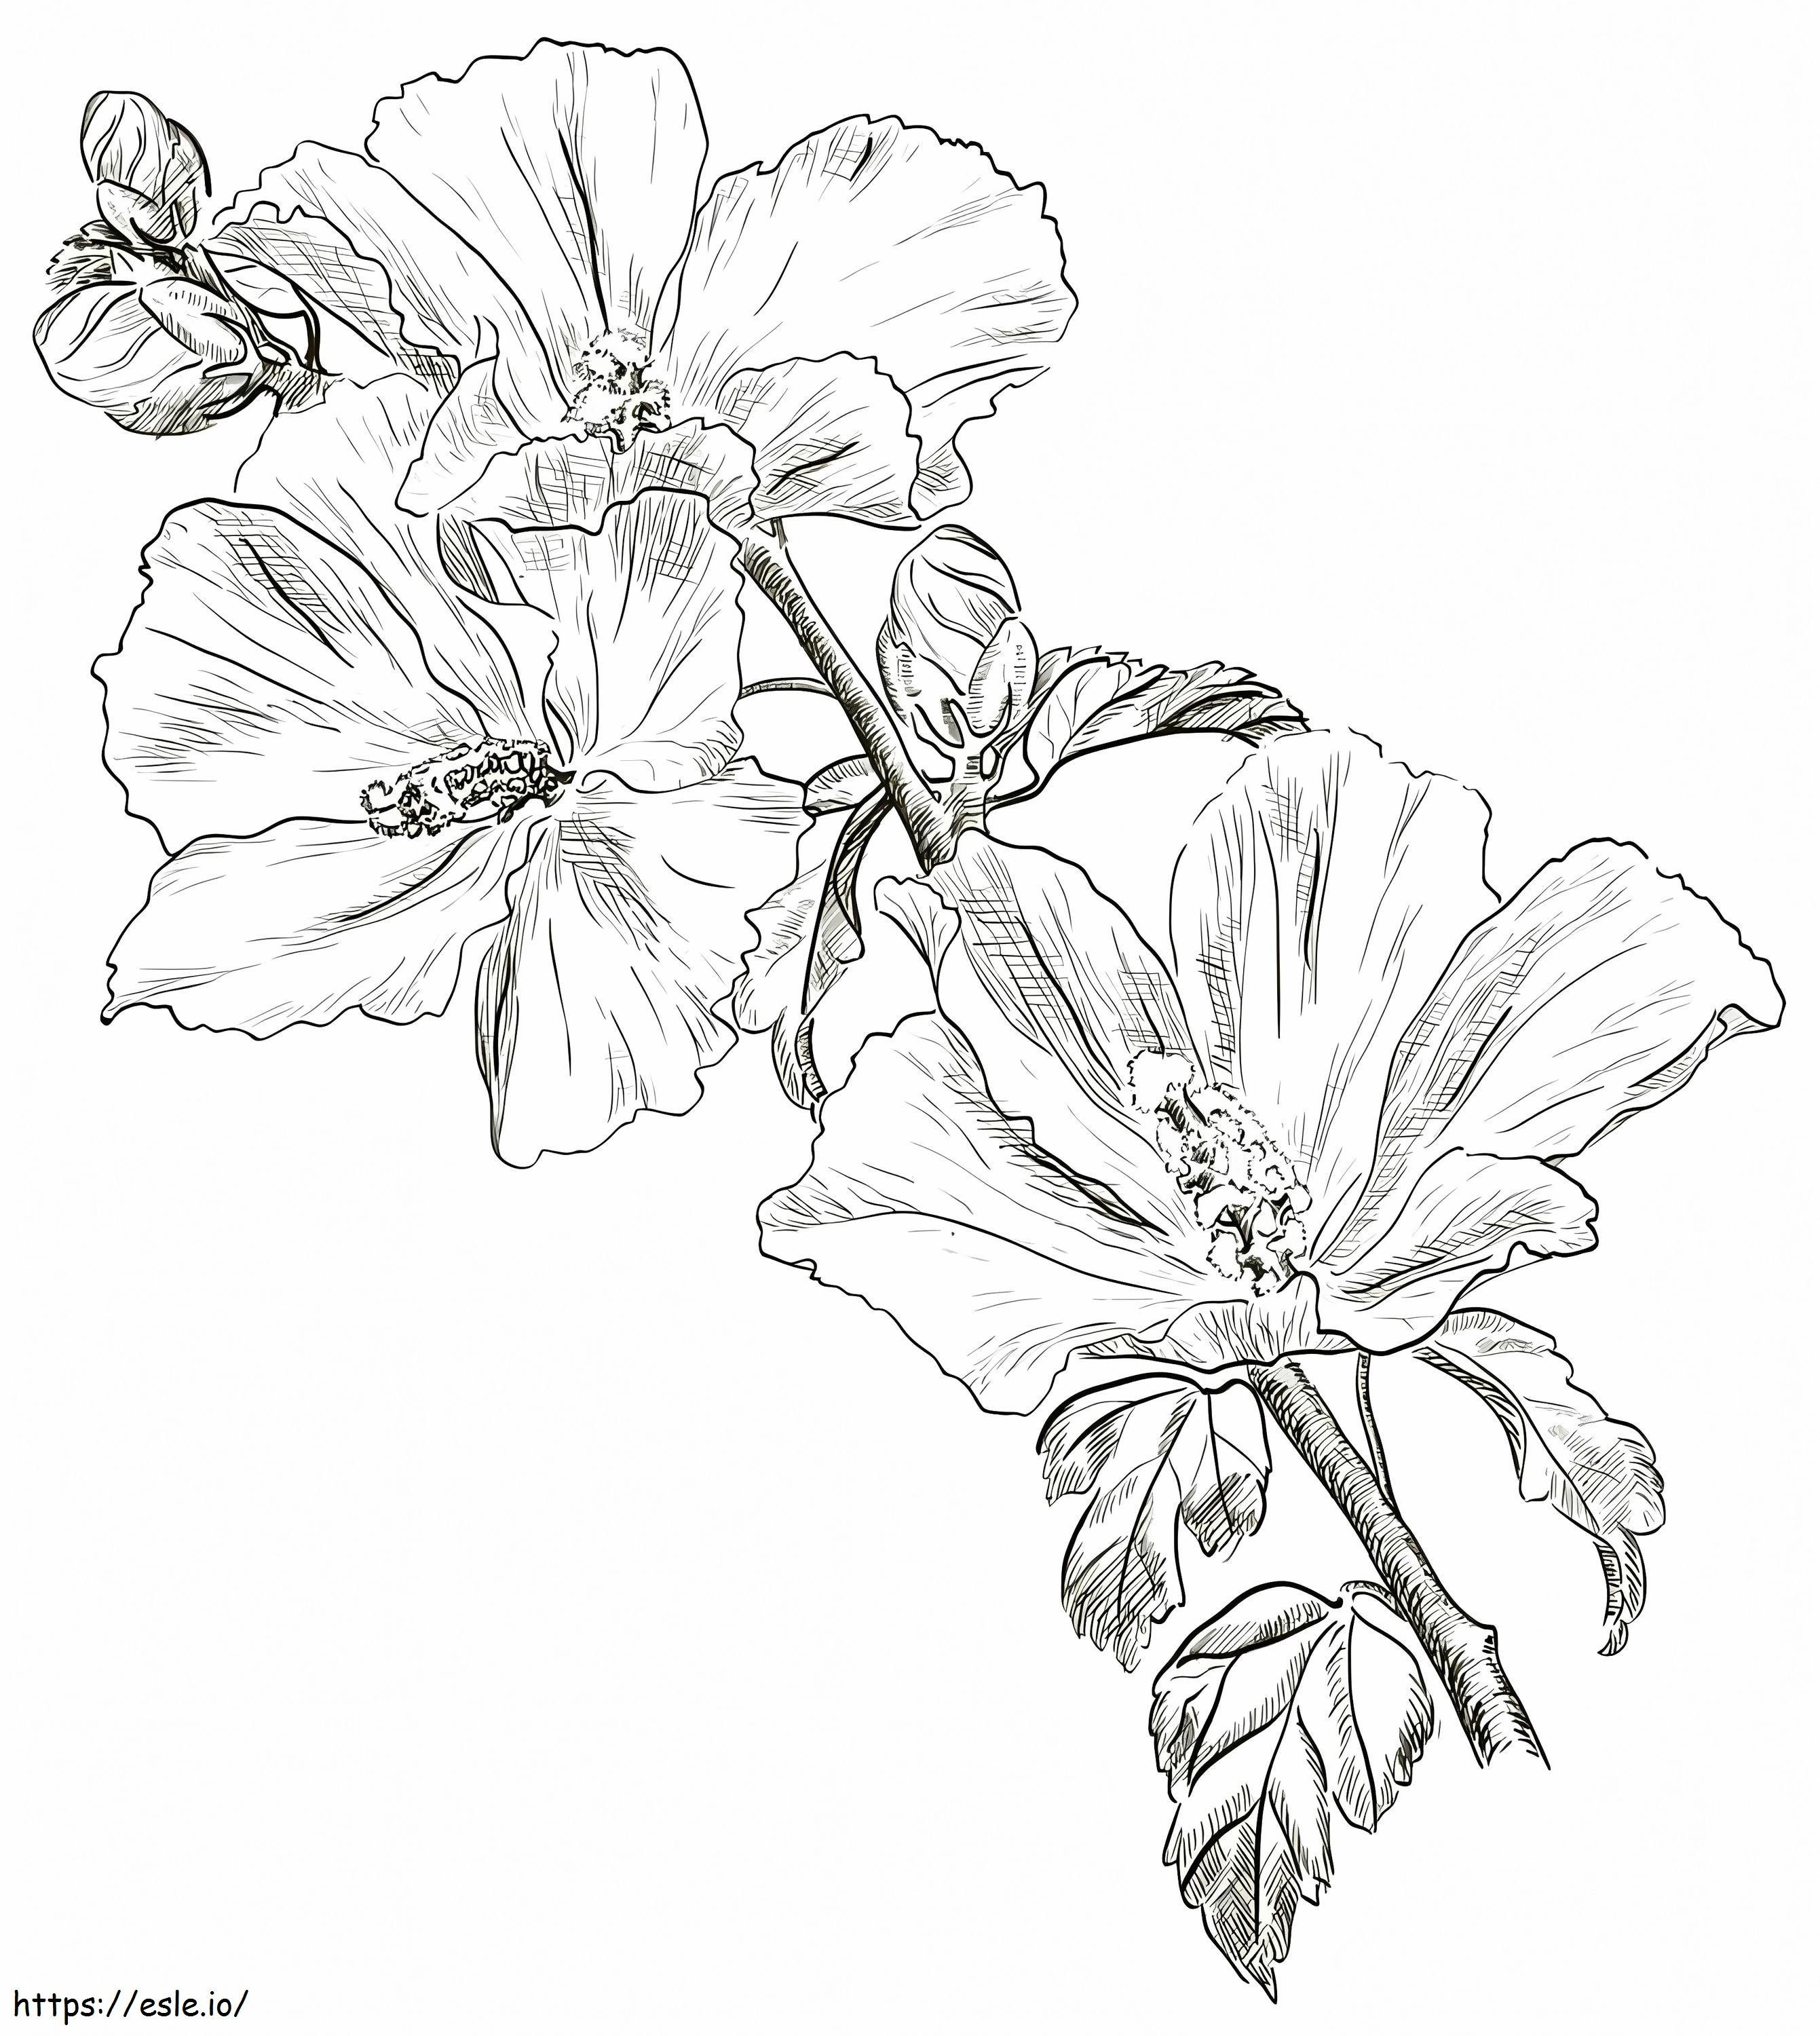 Coloriage Fleur d'hibiscus 8 à imprimer dessin